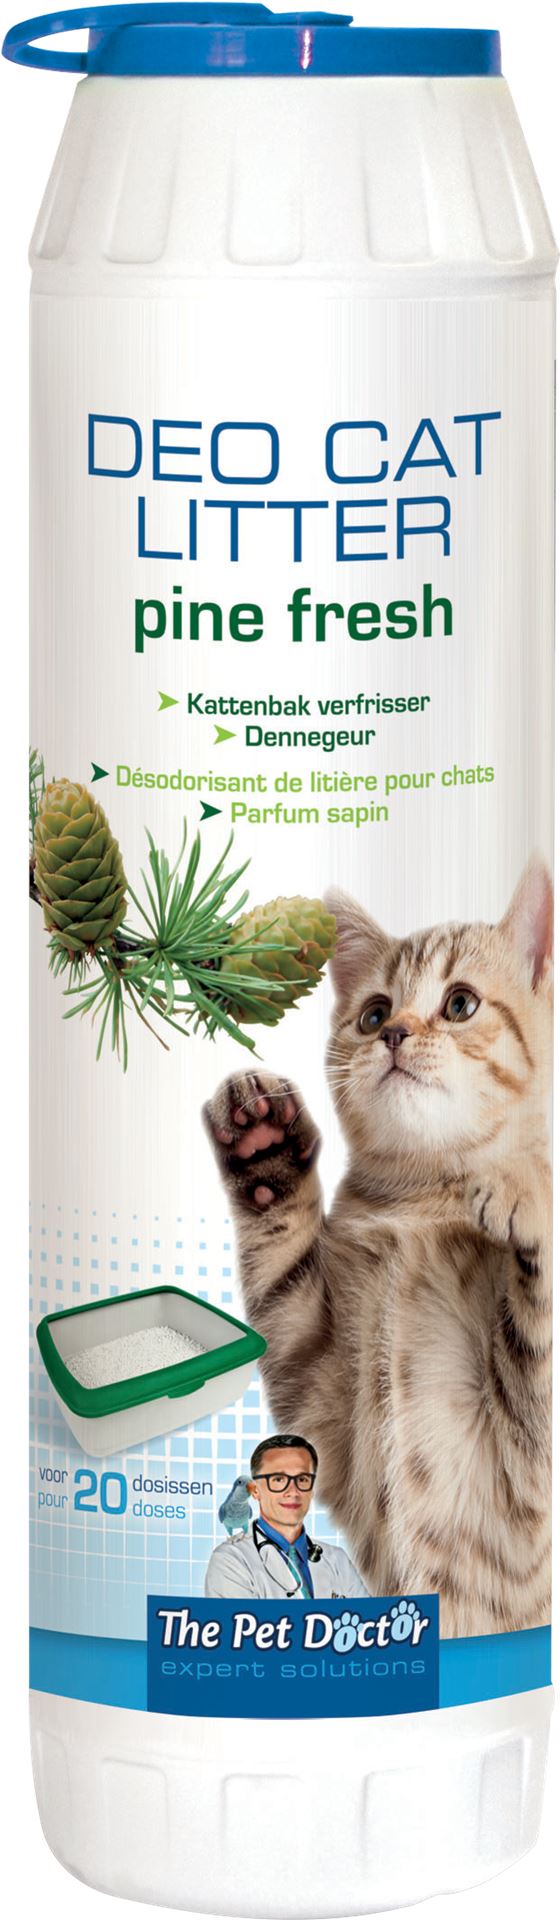 Deo-cat-litter-pine-fresh-750gr-verlengt-het-gebruik-van-kattenbakvulling